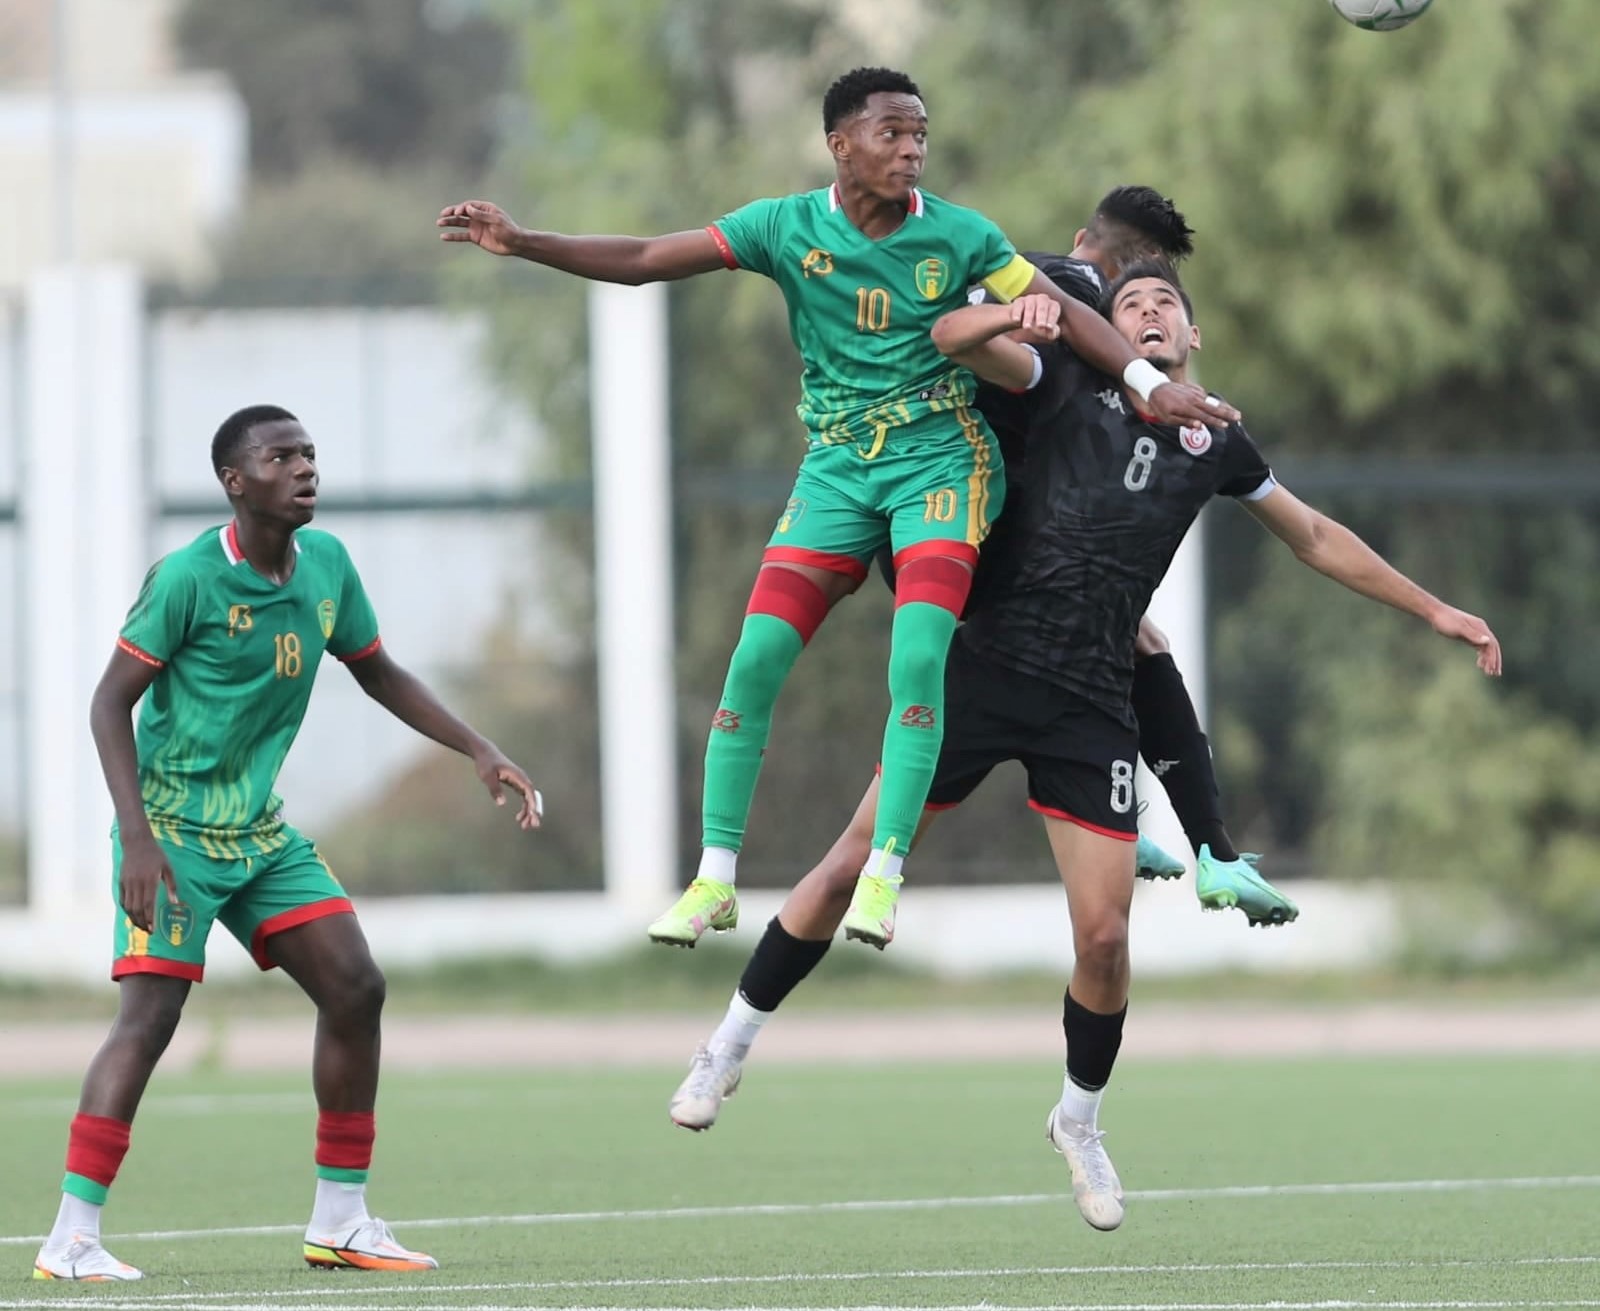 Rude bataille dans les airs entre jeunes (U20) Mauritanien (en vert) et Tunisien.